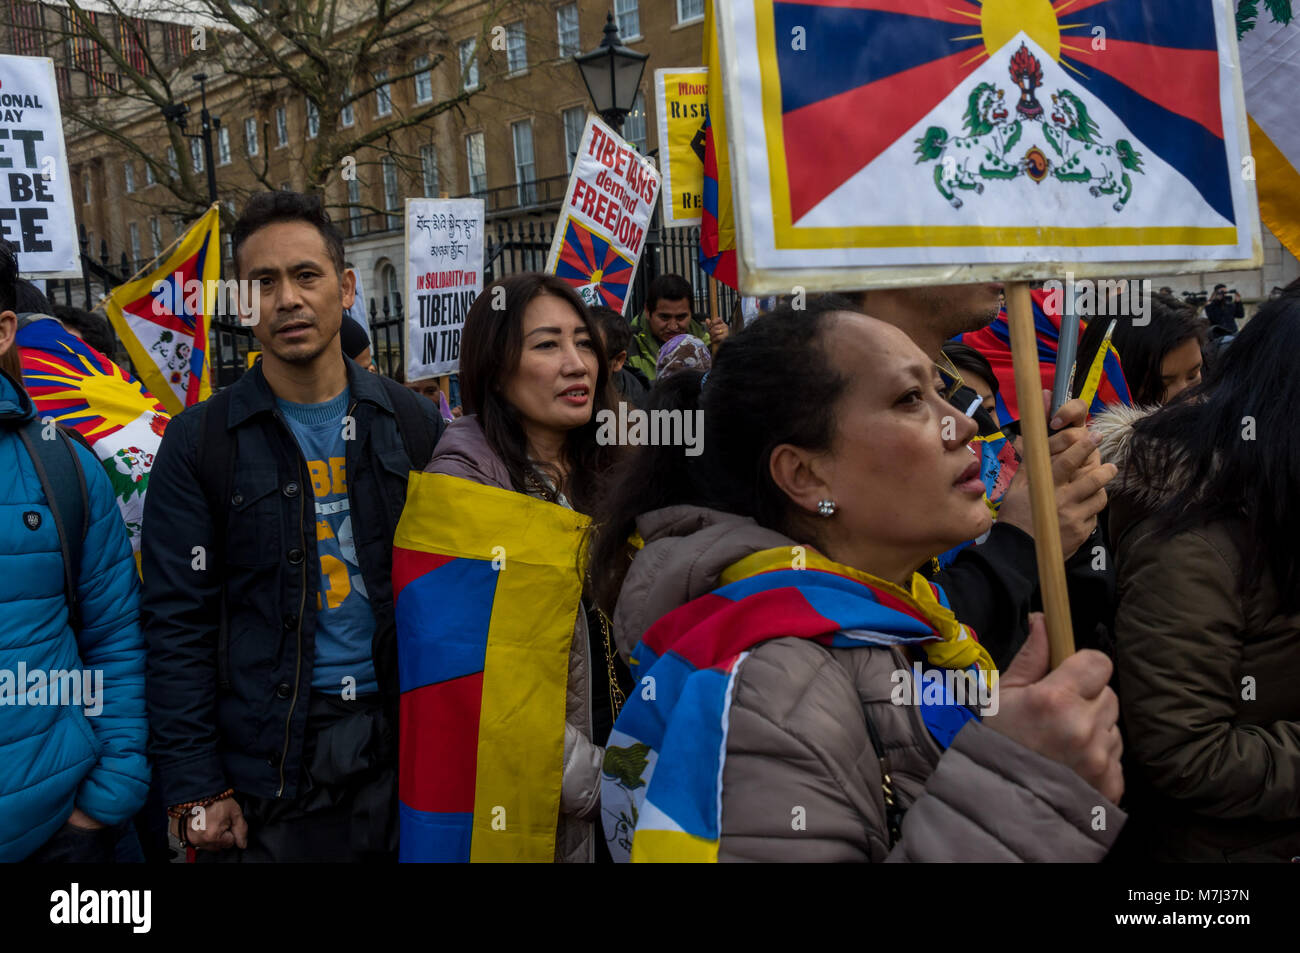 Londres, Royaume-Uni. 10 mars 2018. Les gens avec des drapeaux tibétains Freemdom au rassemblement devant l'assemblée annuelle de la liberté du Tibet à Londres mars commémorant le 59e anniversaire du soulèvement national tibétain. Plusieurs centaines de personnes, dont de nombreux Tibétains et sympathisants se rassemblent à Downing St avant de marcher à une protestation à l'ambassade de Chine. Avant la marche gauche il y avait une minute de silence pour ceux qui sont morts, y compris par l'auto-immolation, et une longue prière tibétain, suivi par le chant de l'hymne national tibétain. Peter Marshall (IMAGESLIVE Image Crédit : © Peter Marshall/ Crédit : ZUMA Pre Banque D'Images